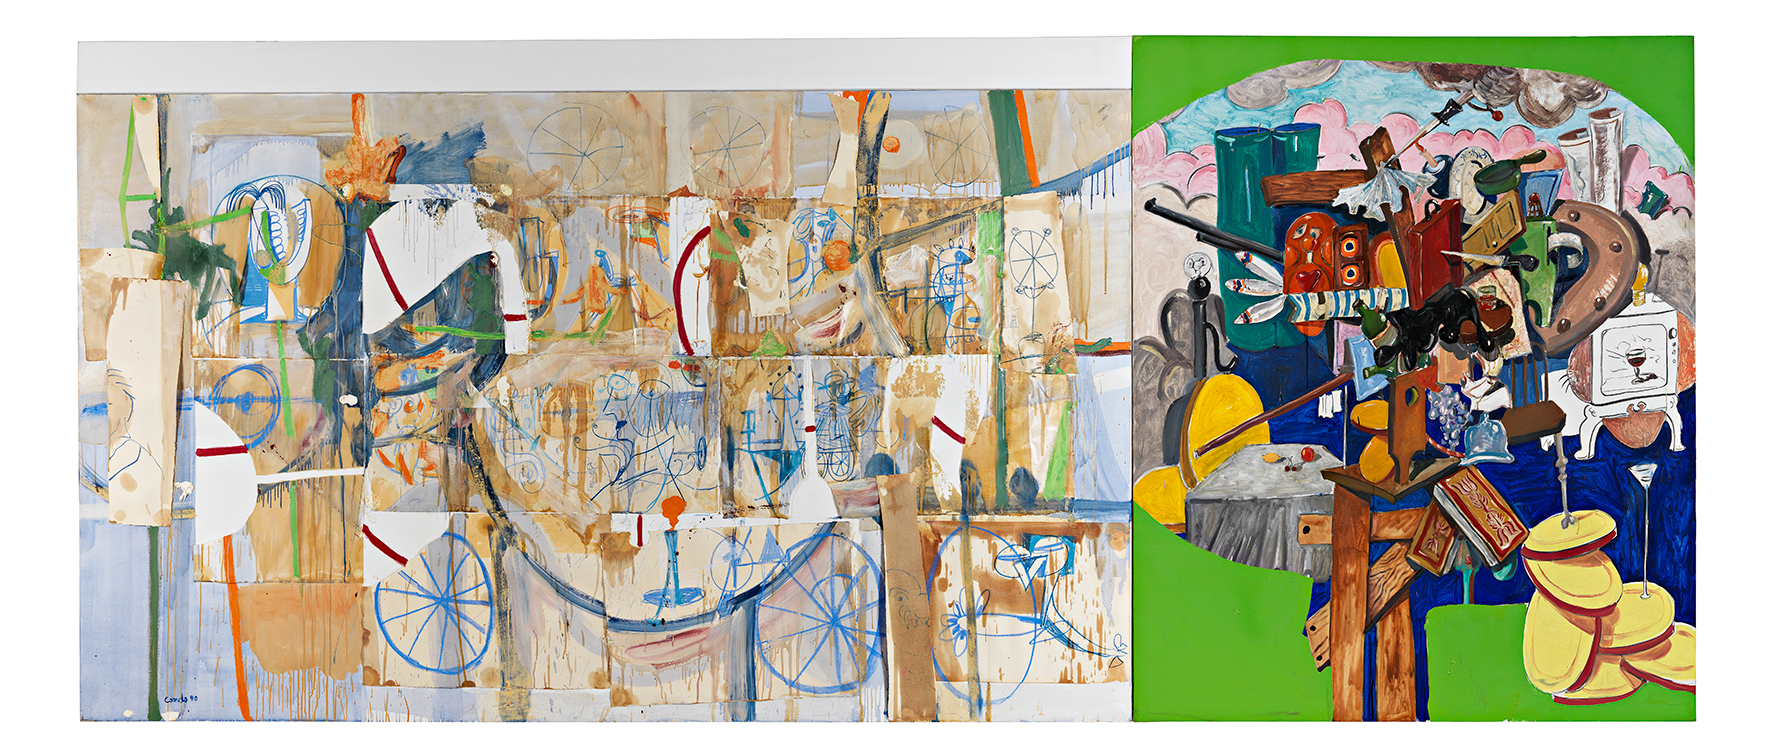 George CONDO - Collage Expanded Composition Combination - 1990, Huile et collage sur toile - 195 x 460 cm - Collection FRAC Auvergne - Année d'acquisition : 2001